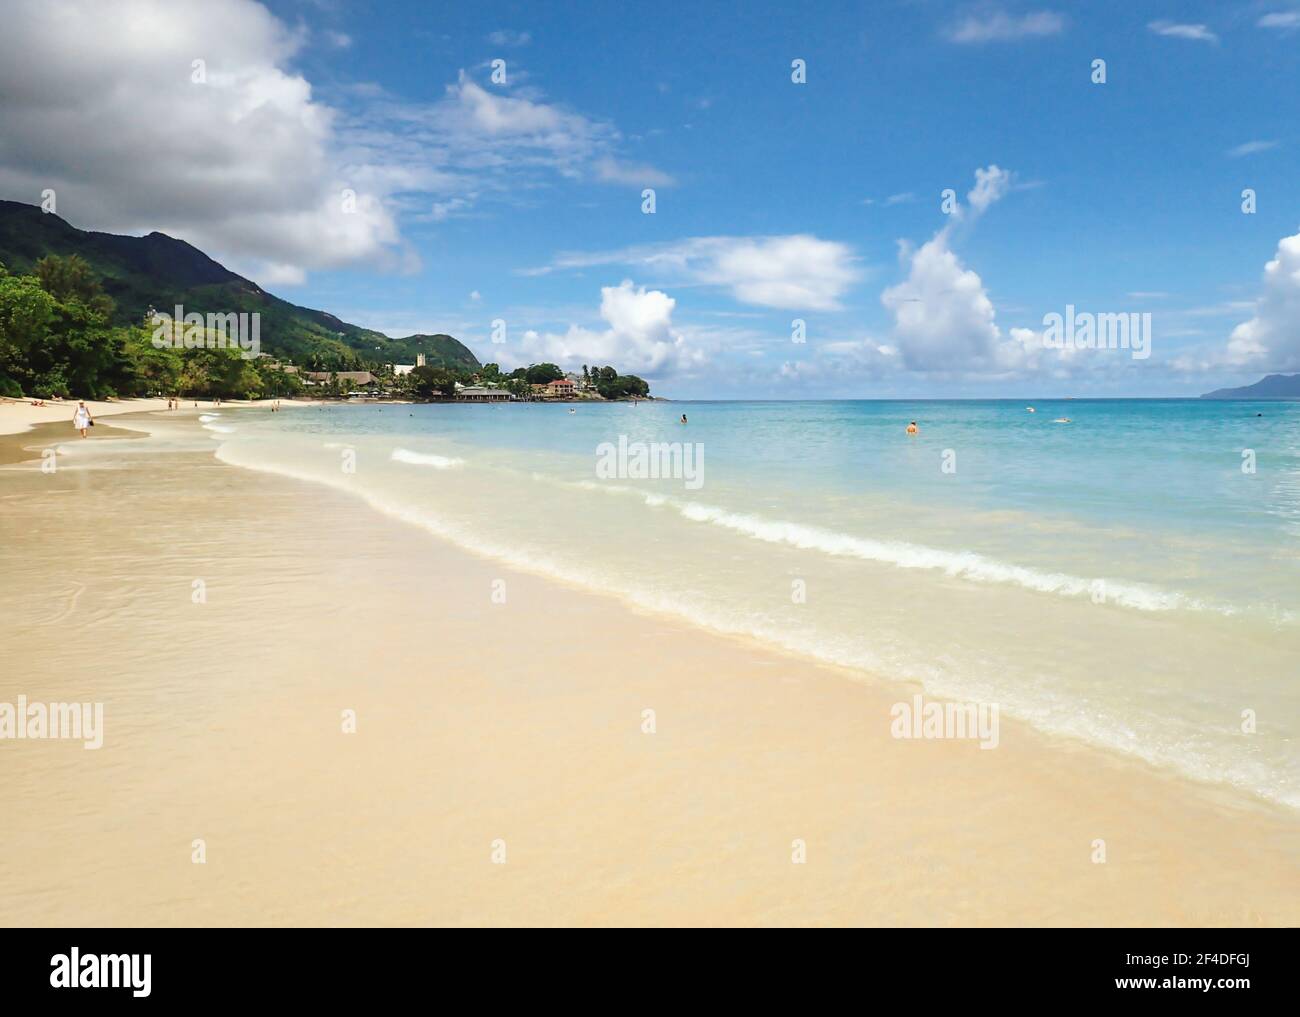 Tropical sandy beach, Beau Valon, Seychelles Stock Photo